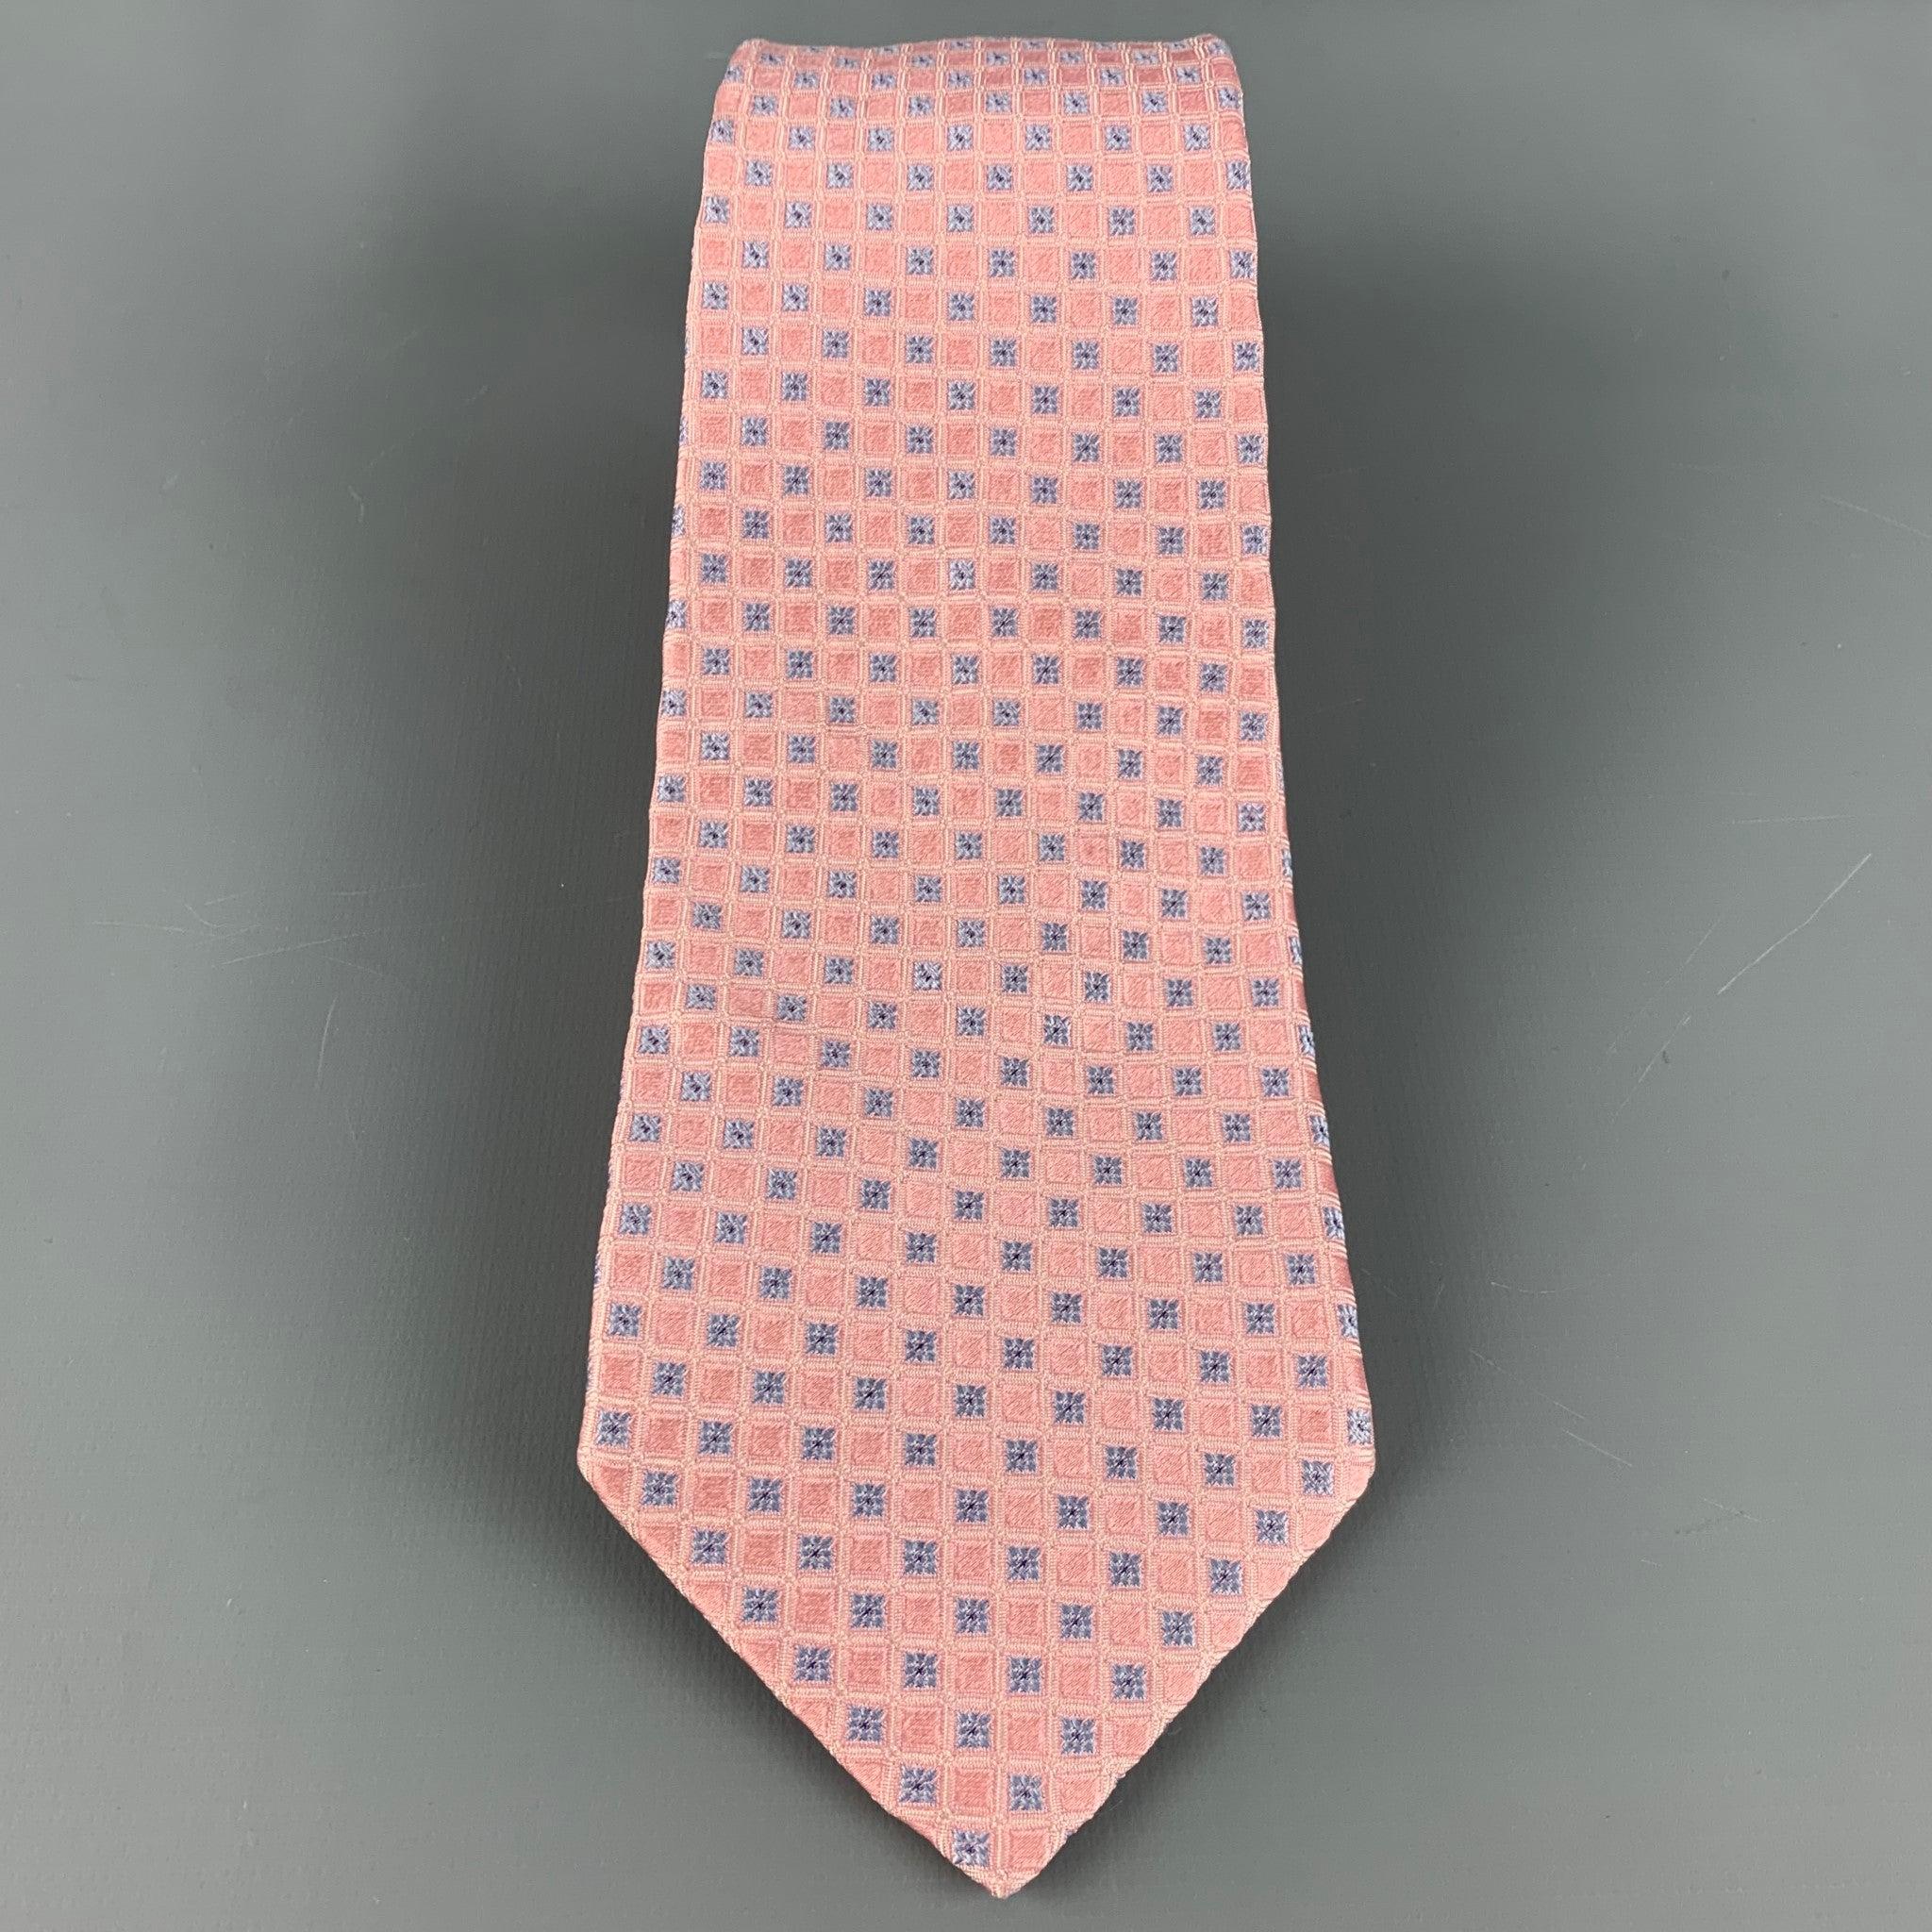 VALENTINO
Krawatte aus rosa Seide mit einem hellblauen Karomuster. Made in Italy. sehr guter gebrauchter Zustand. 

Abmessungen: 
  Breite: 3,5 Zoll Länge: 63 Zoll 
  
  
 
Referenz: 126562
Kategorie: Krawatte
Mehr Details
    
Marke: 